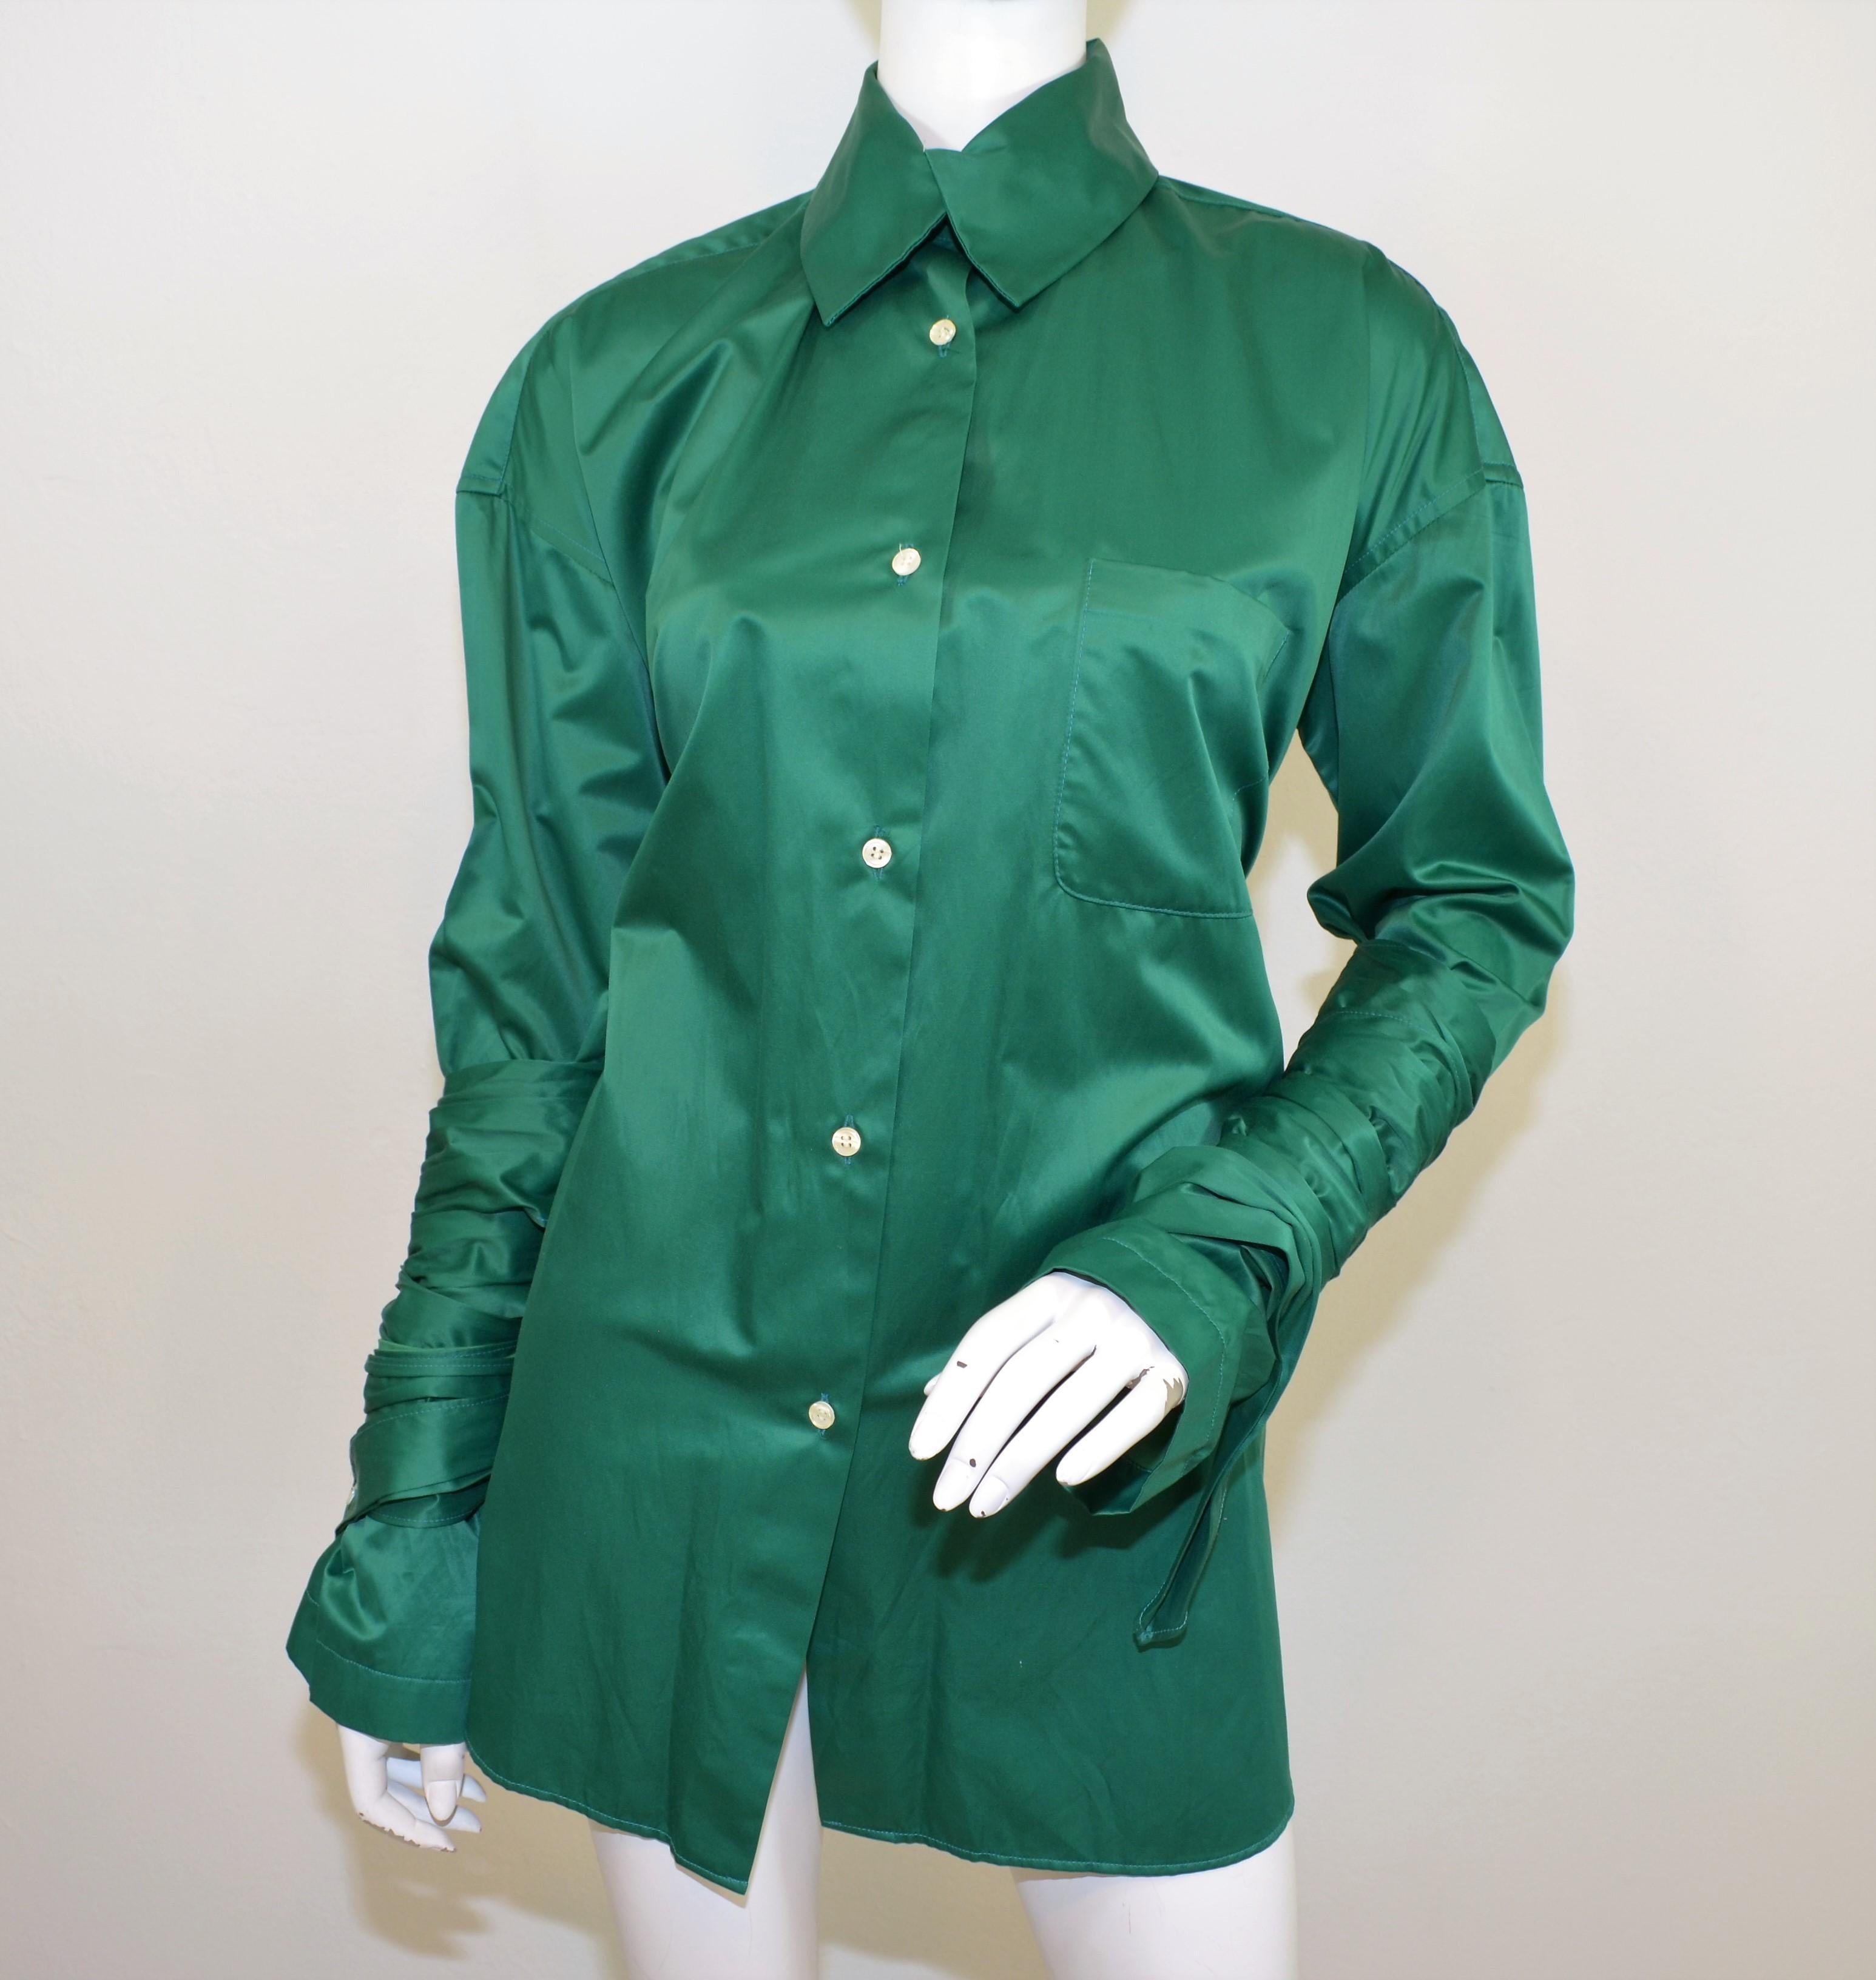 Le top Romeo Gigli est présenté dans un vert Kelly avec des fermetures à boutons et un détail enveloppant autour des manches. Le dessus est en excellent état.

Mesures :
Buste 52''
Manches 23''
Longueur 34''
Epaule à épaule 